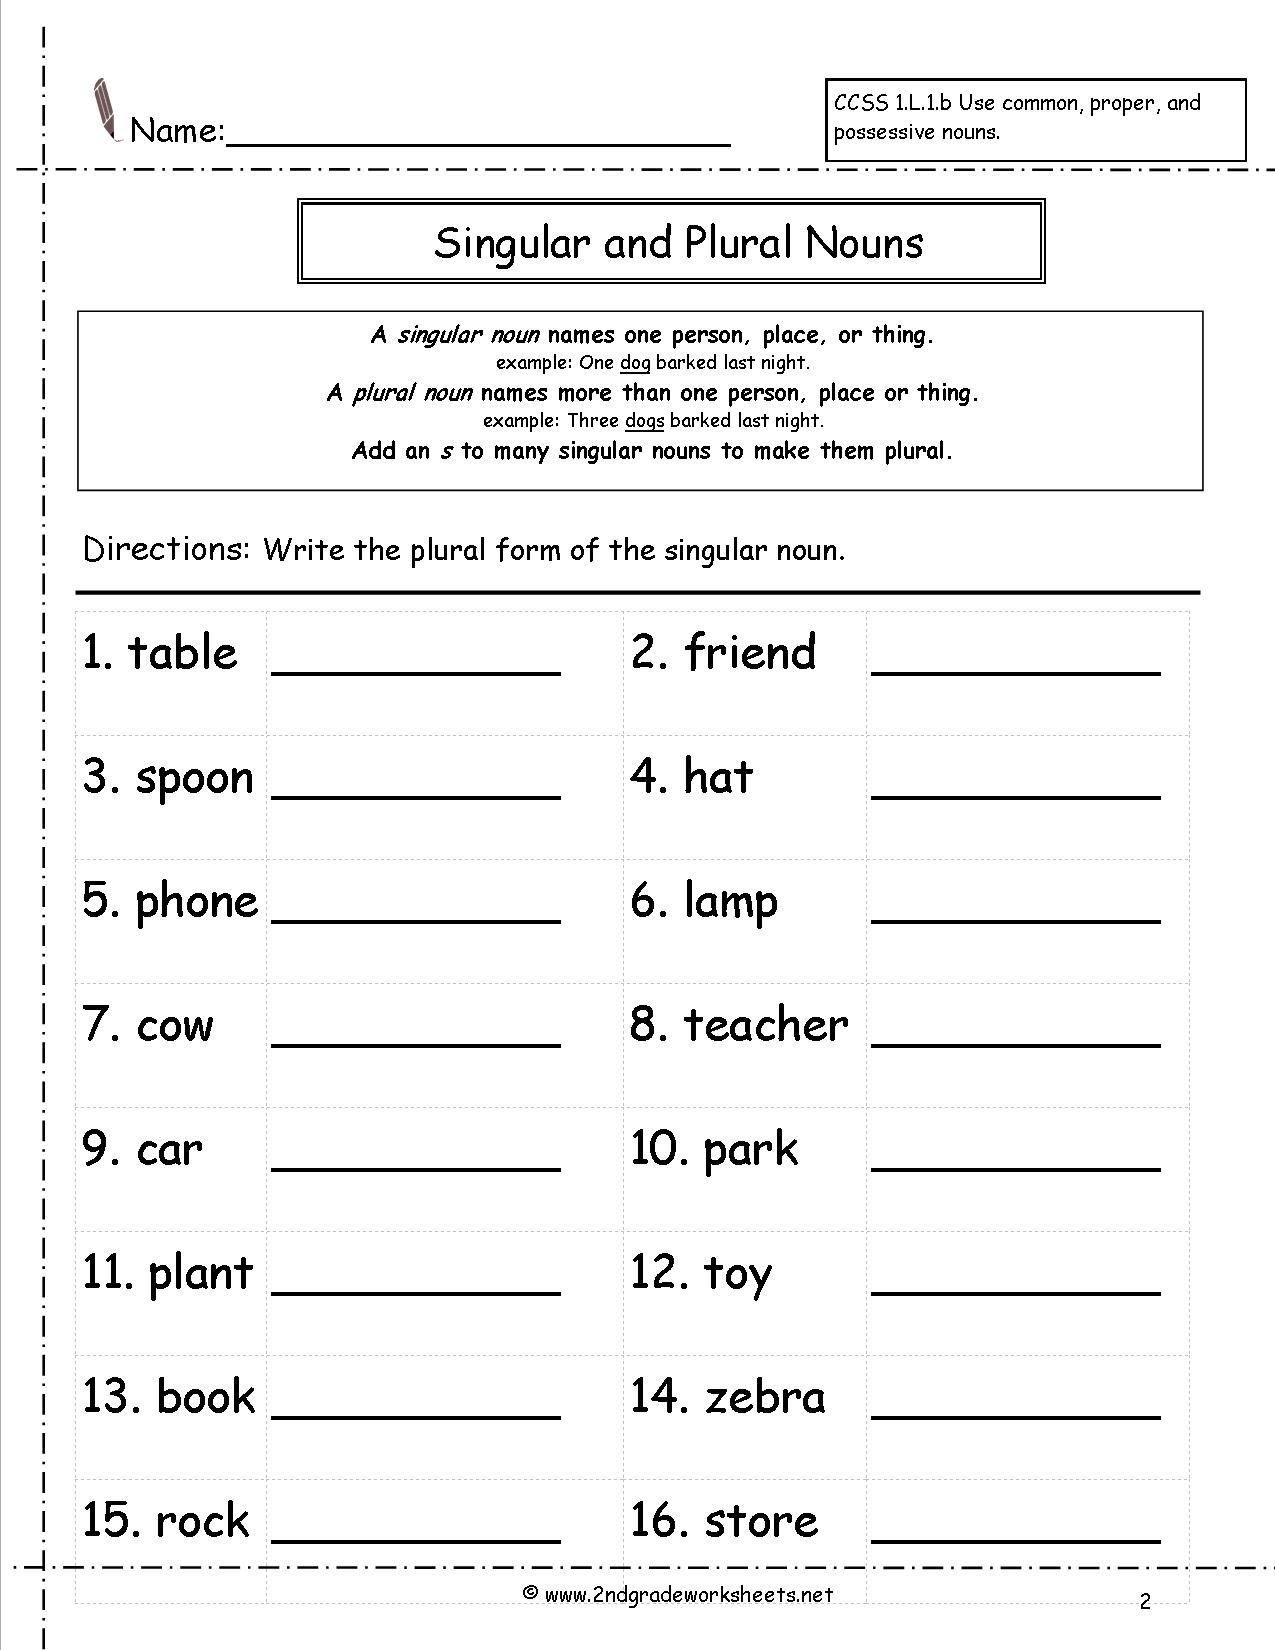 Make Singular To Plural Worksheet